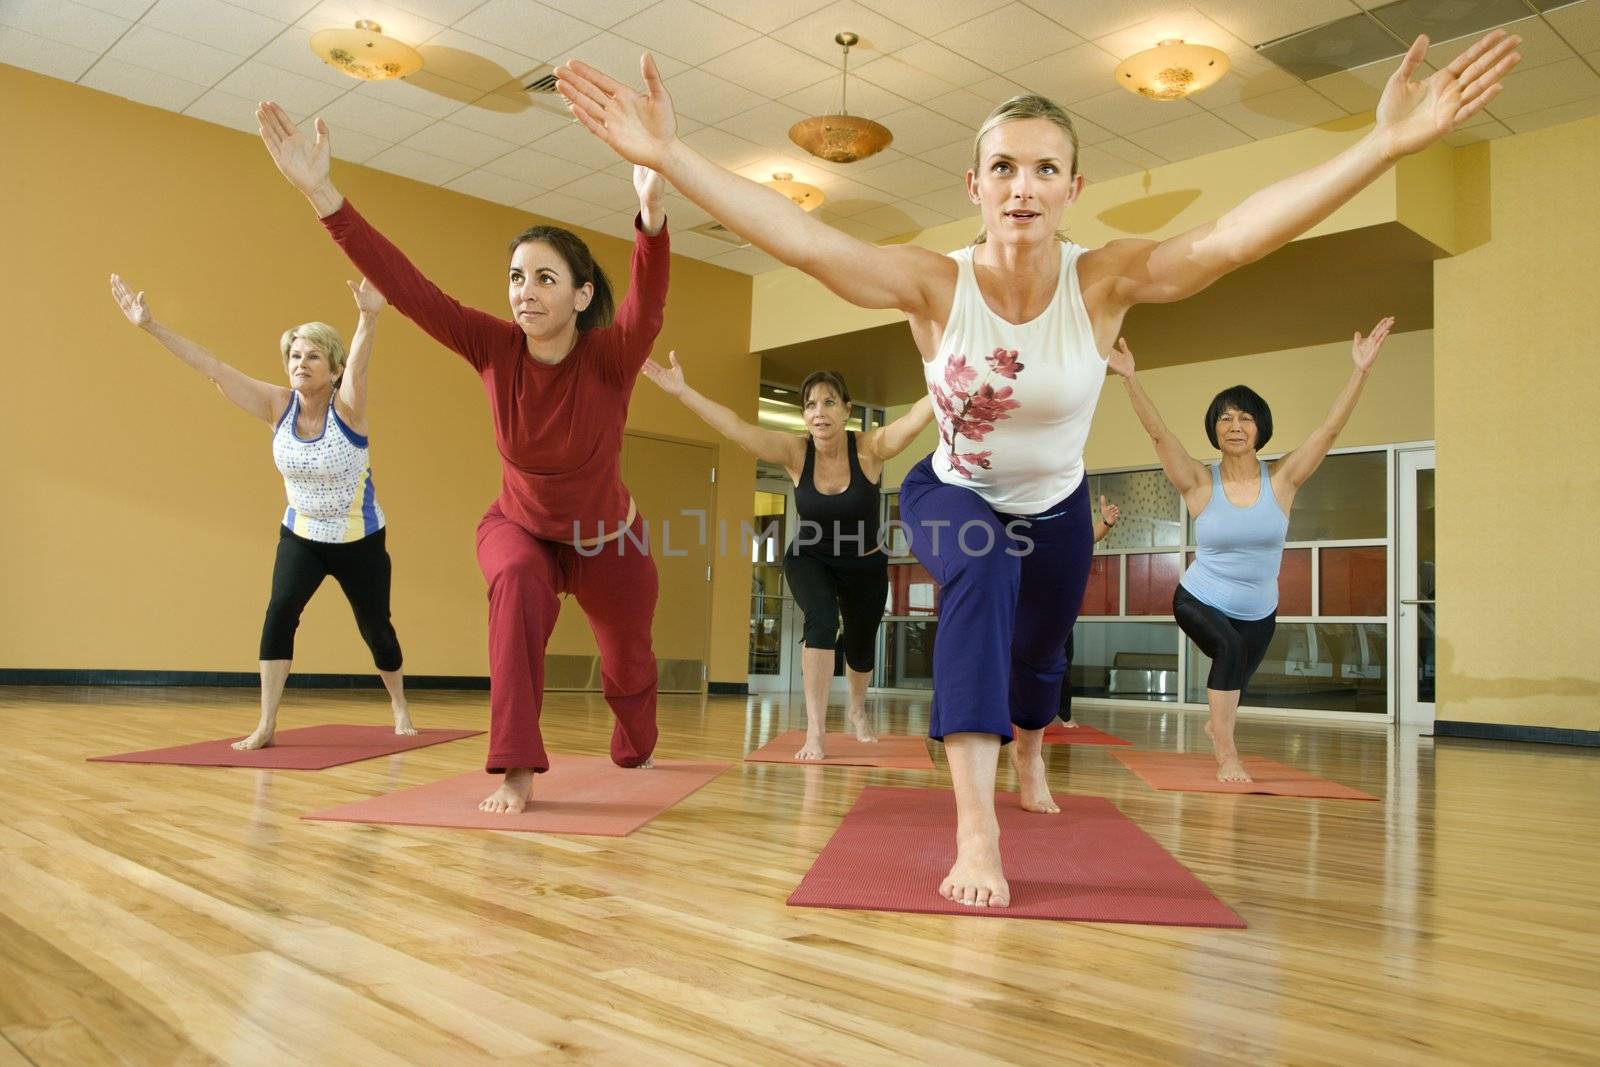 Prime adult female Caucasians in yoga class.